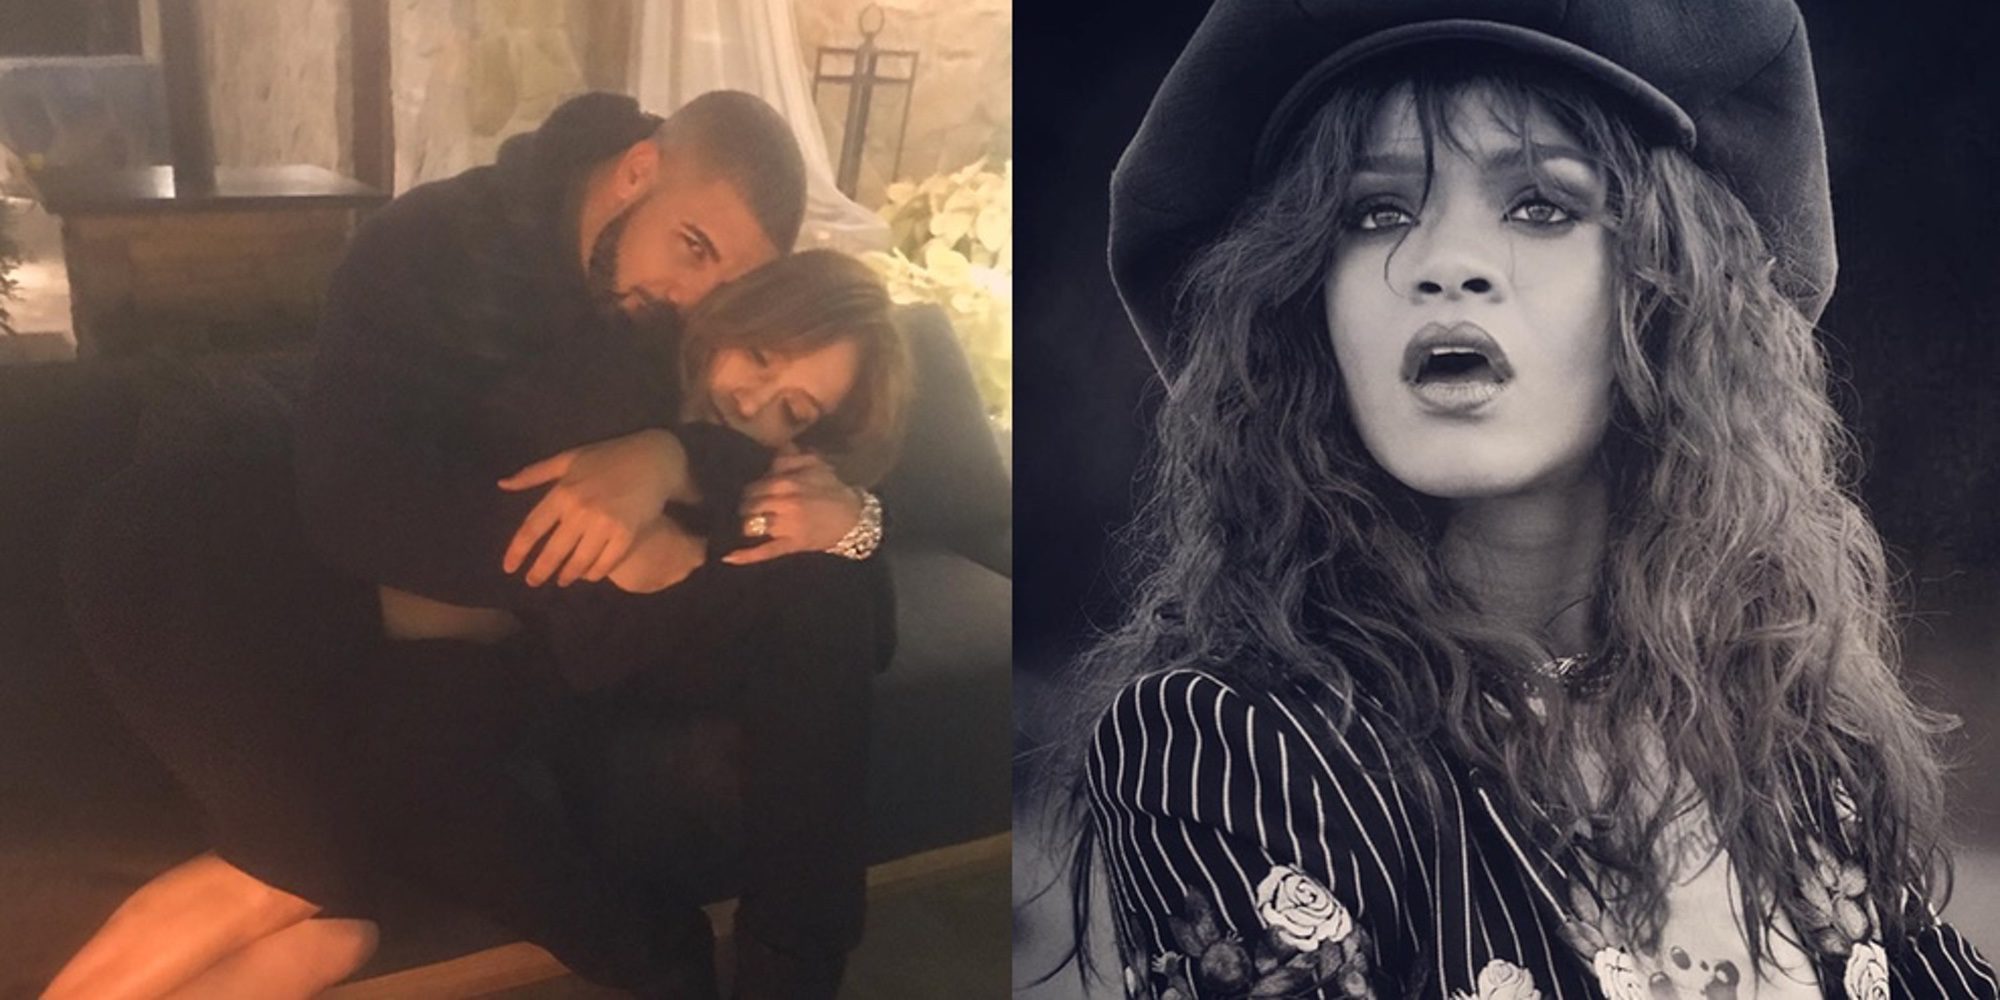 Rihanna monta en cólera al ver la foto de Drake y Jennifer Lopez que confirmaría su romance